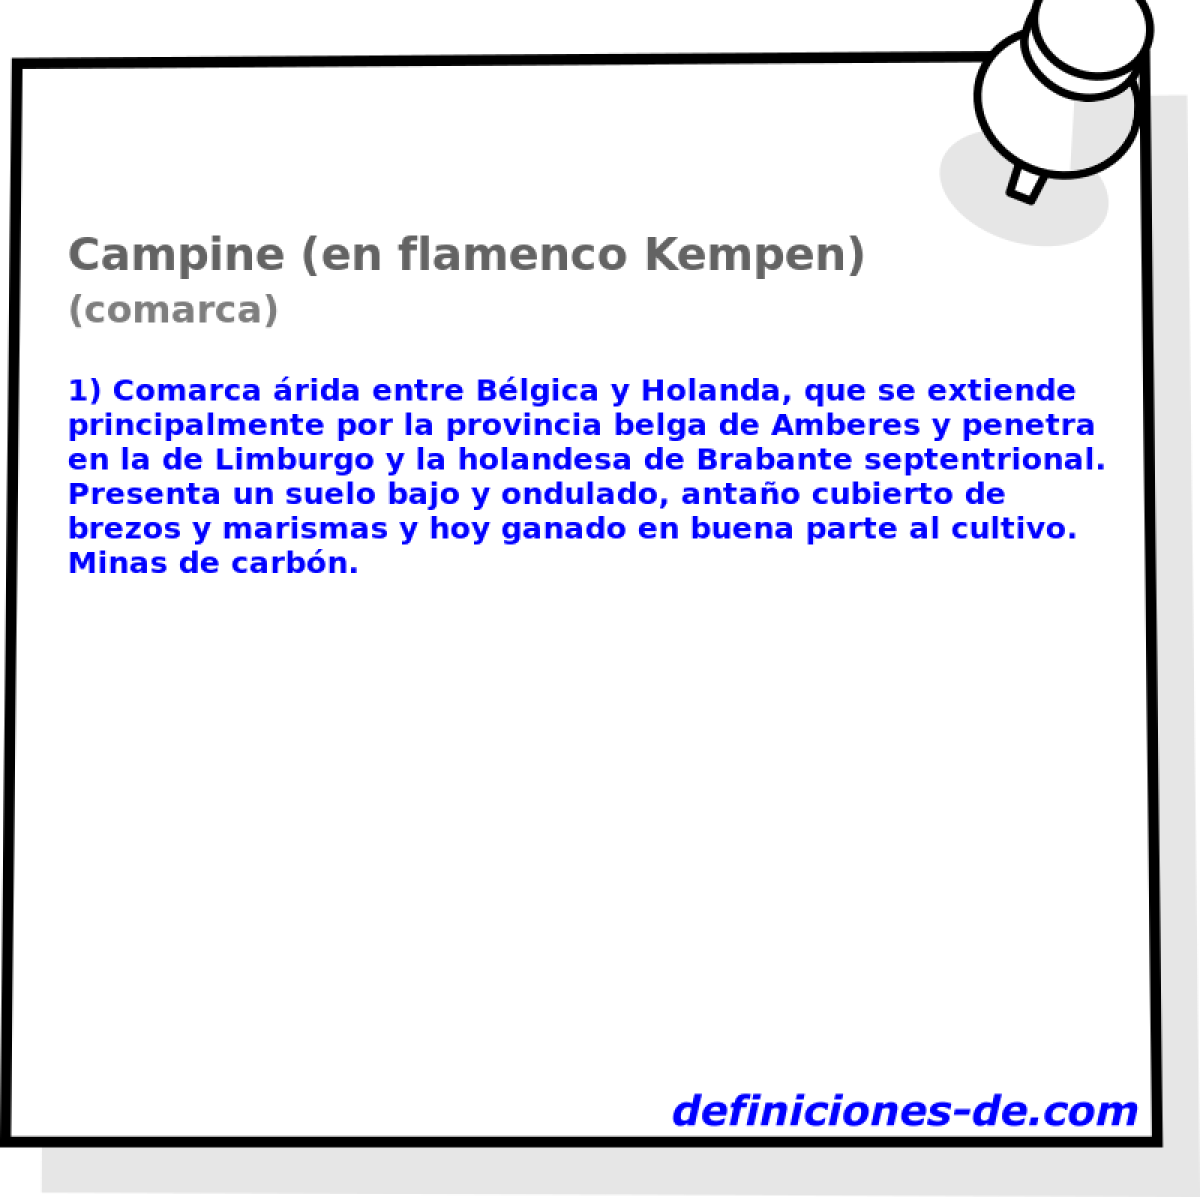 Campine (en flamenco Kempen) (comarca)